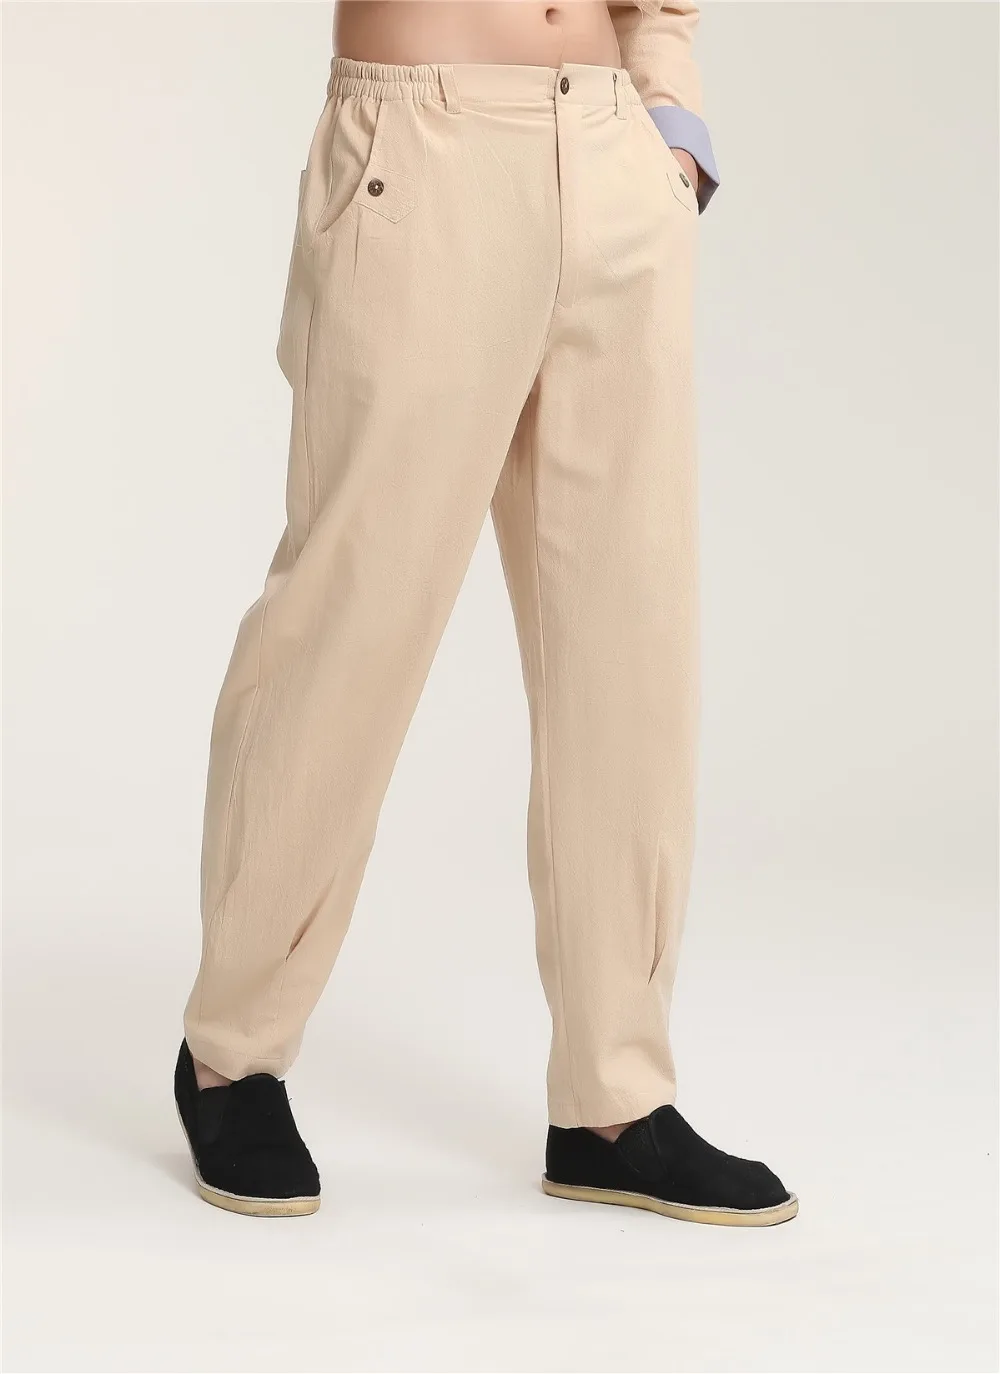 Шанхай история китайская мужская традиционная одежда Китайский штаны для кунг-фу Тай чи брюки для мужчин смесь льняные штаны